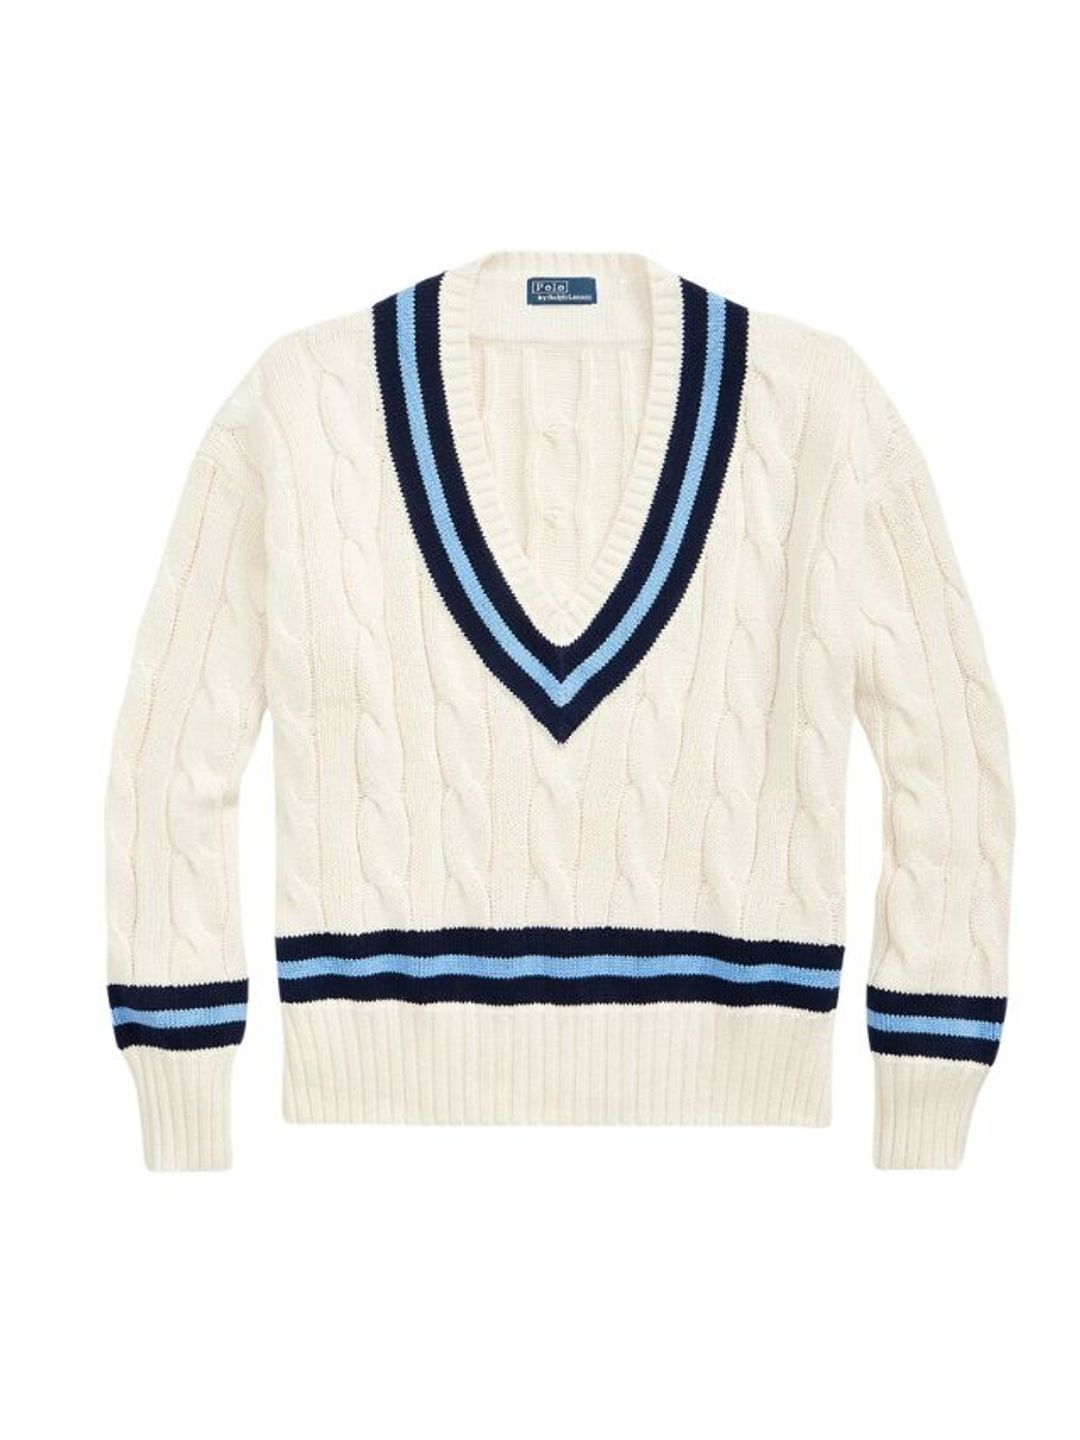 Ralph Lauren cricket sweater 